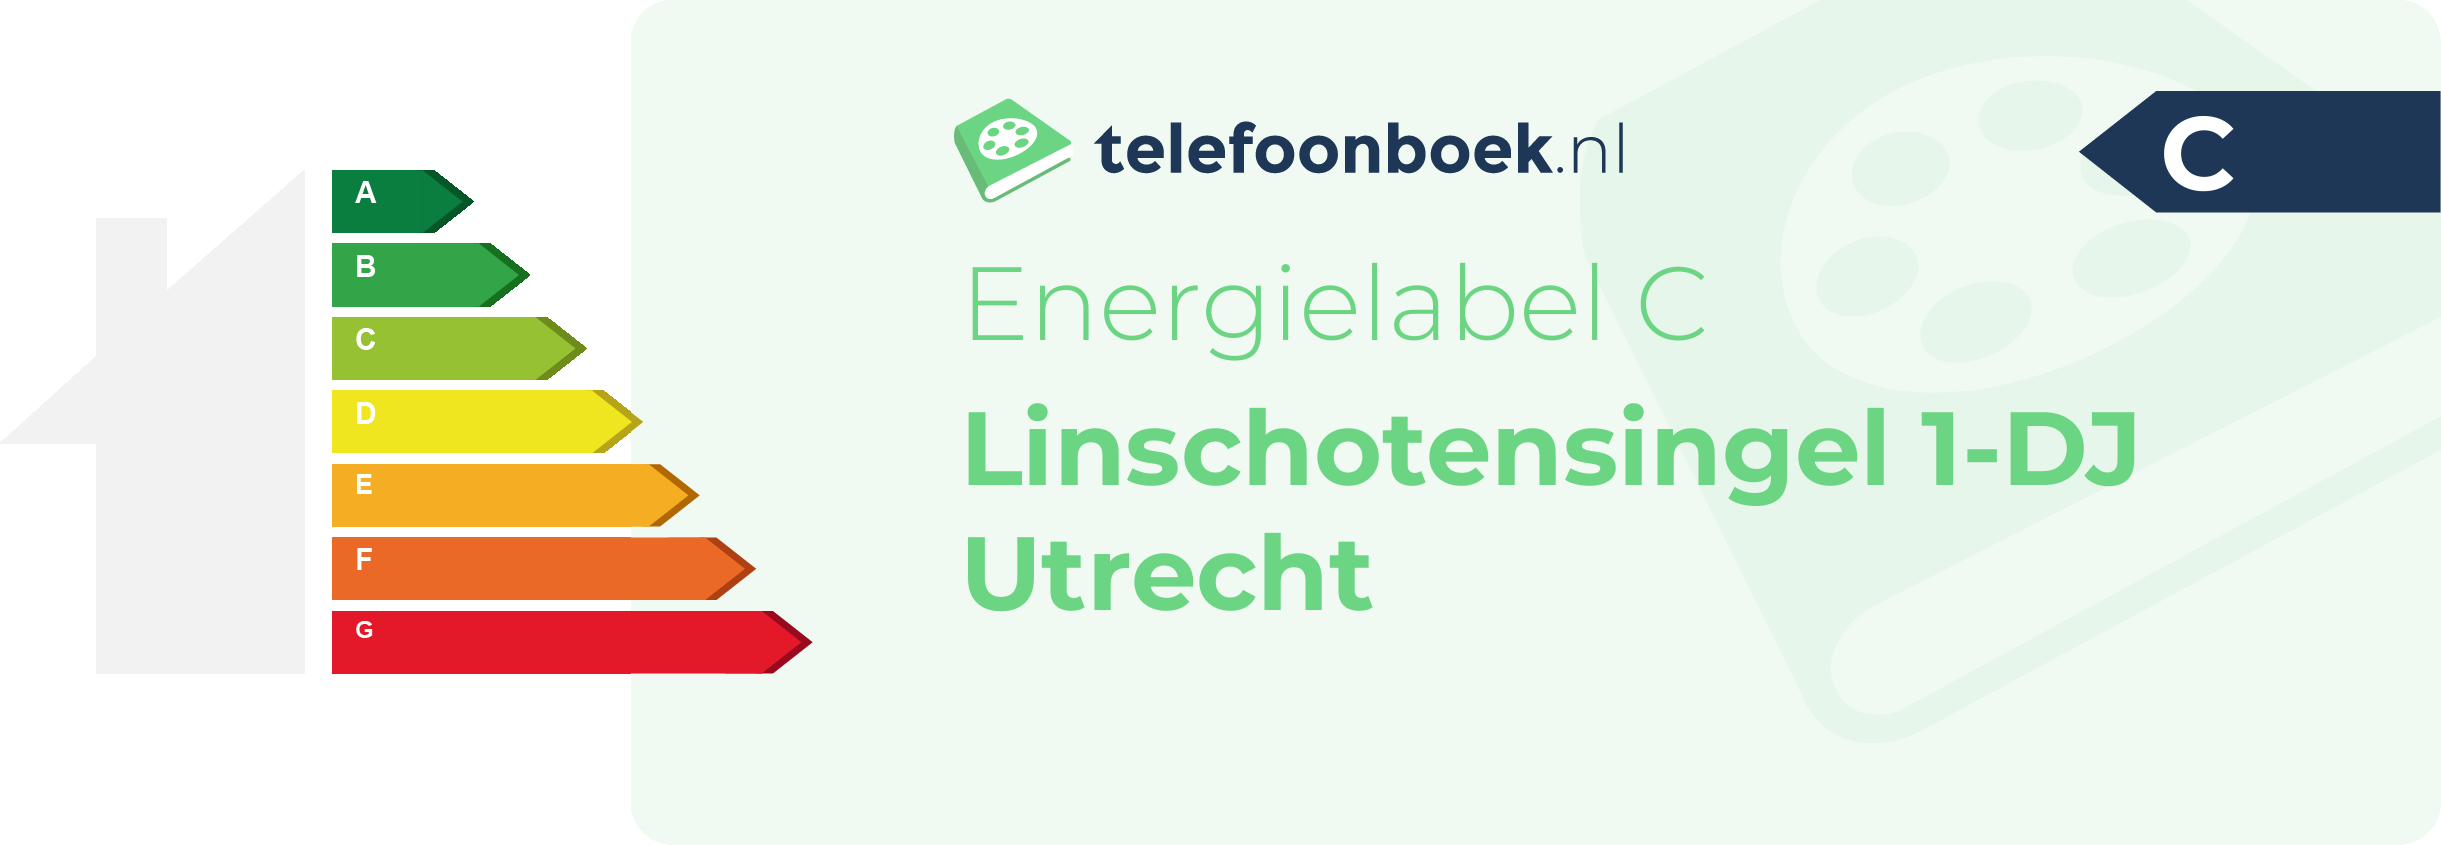 Energielabel Linschotensingel 1-DJ Utrecht